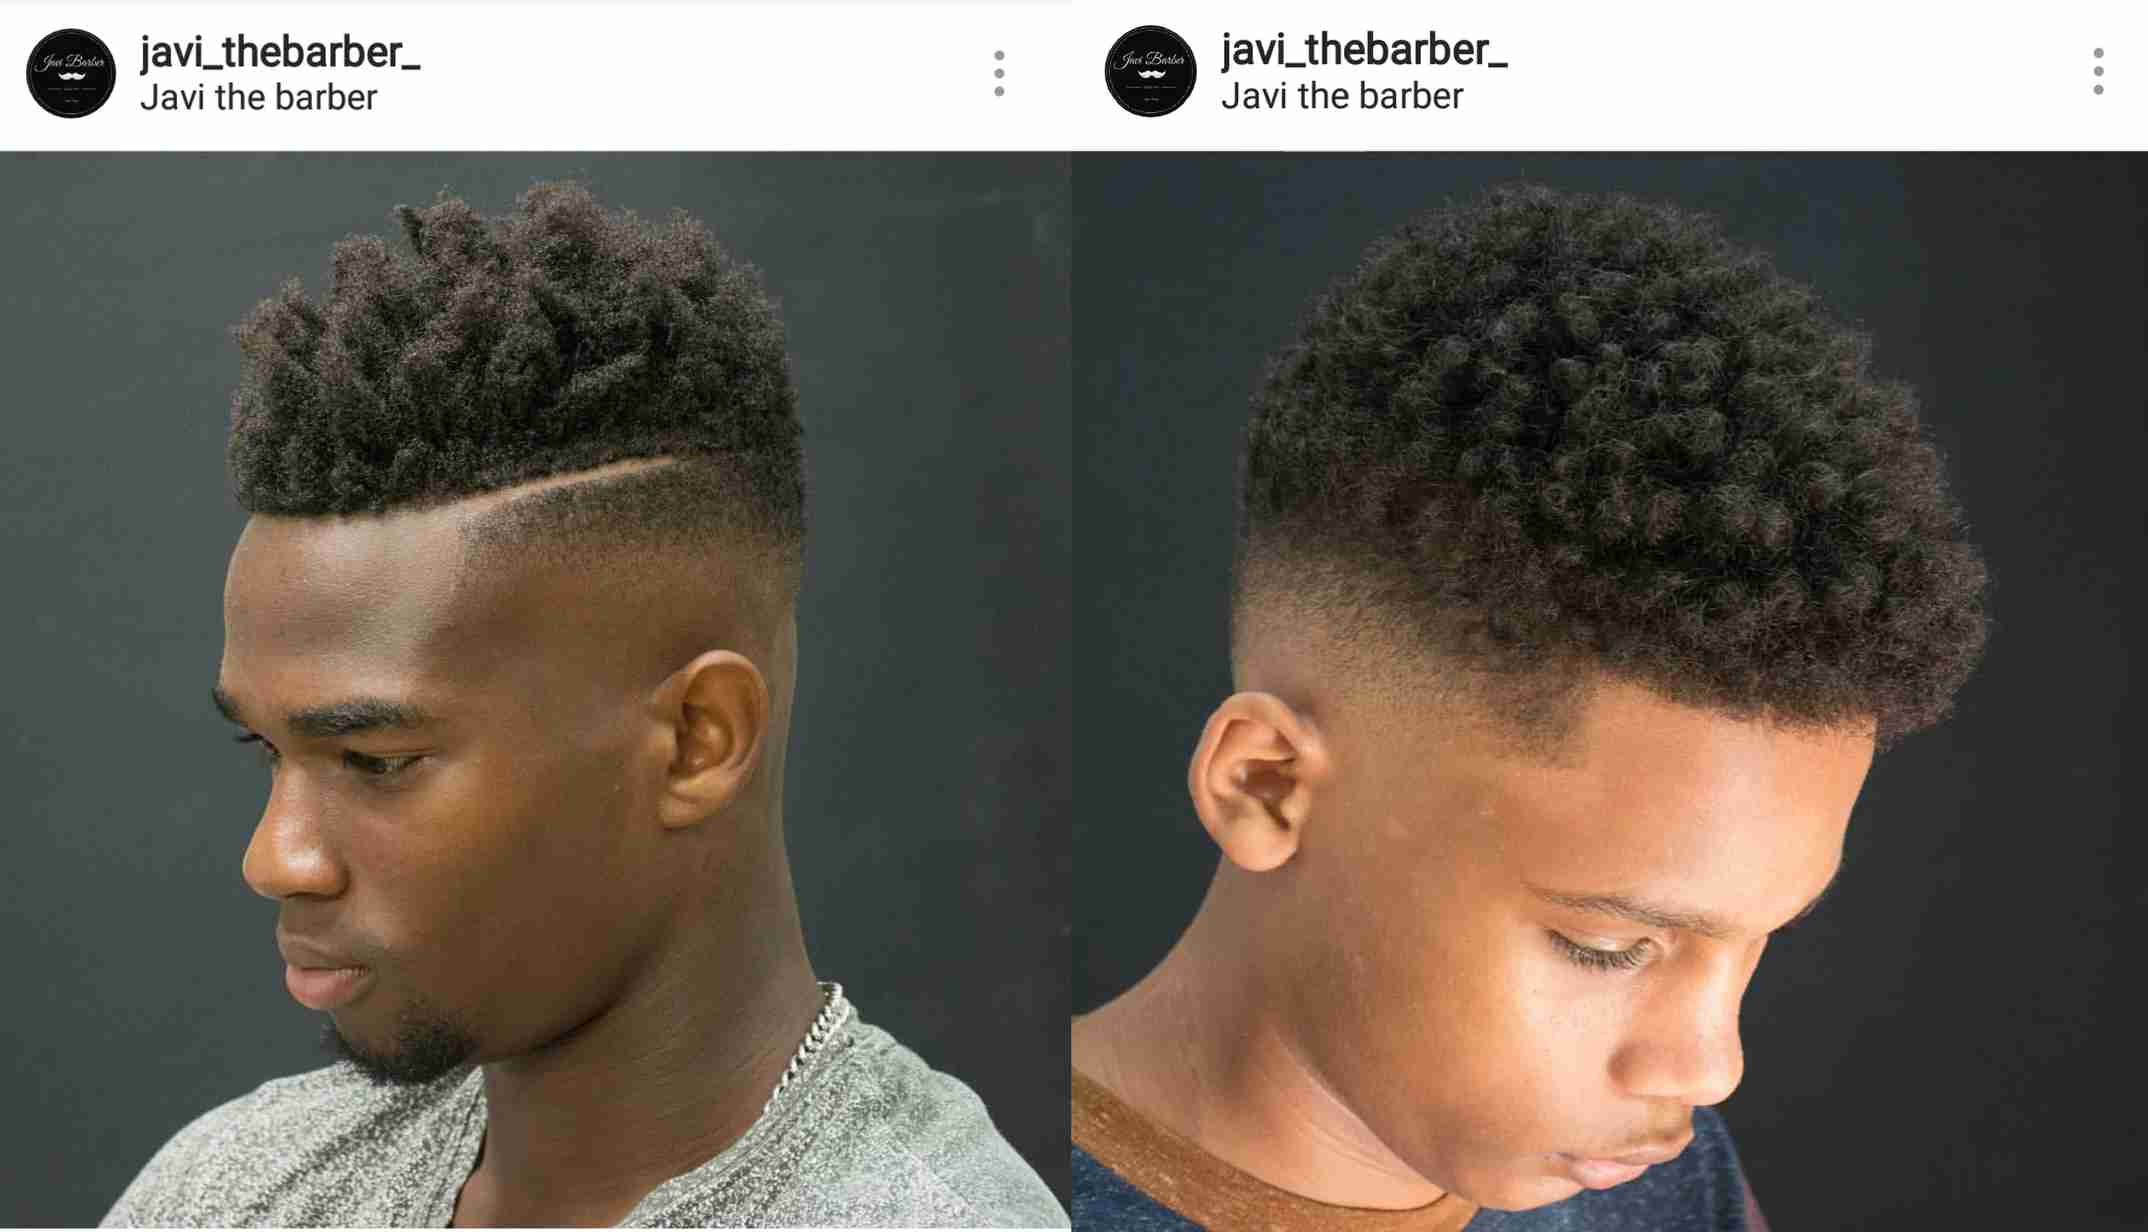 corte de cabelo masculino afros 2018